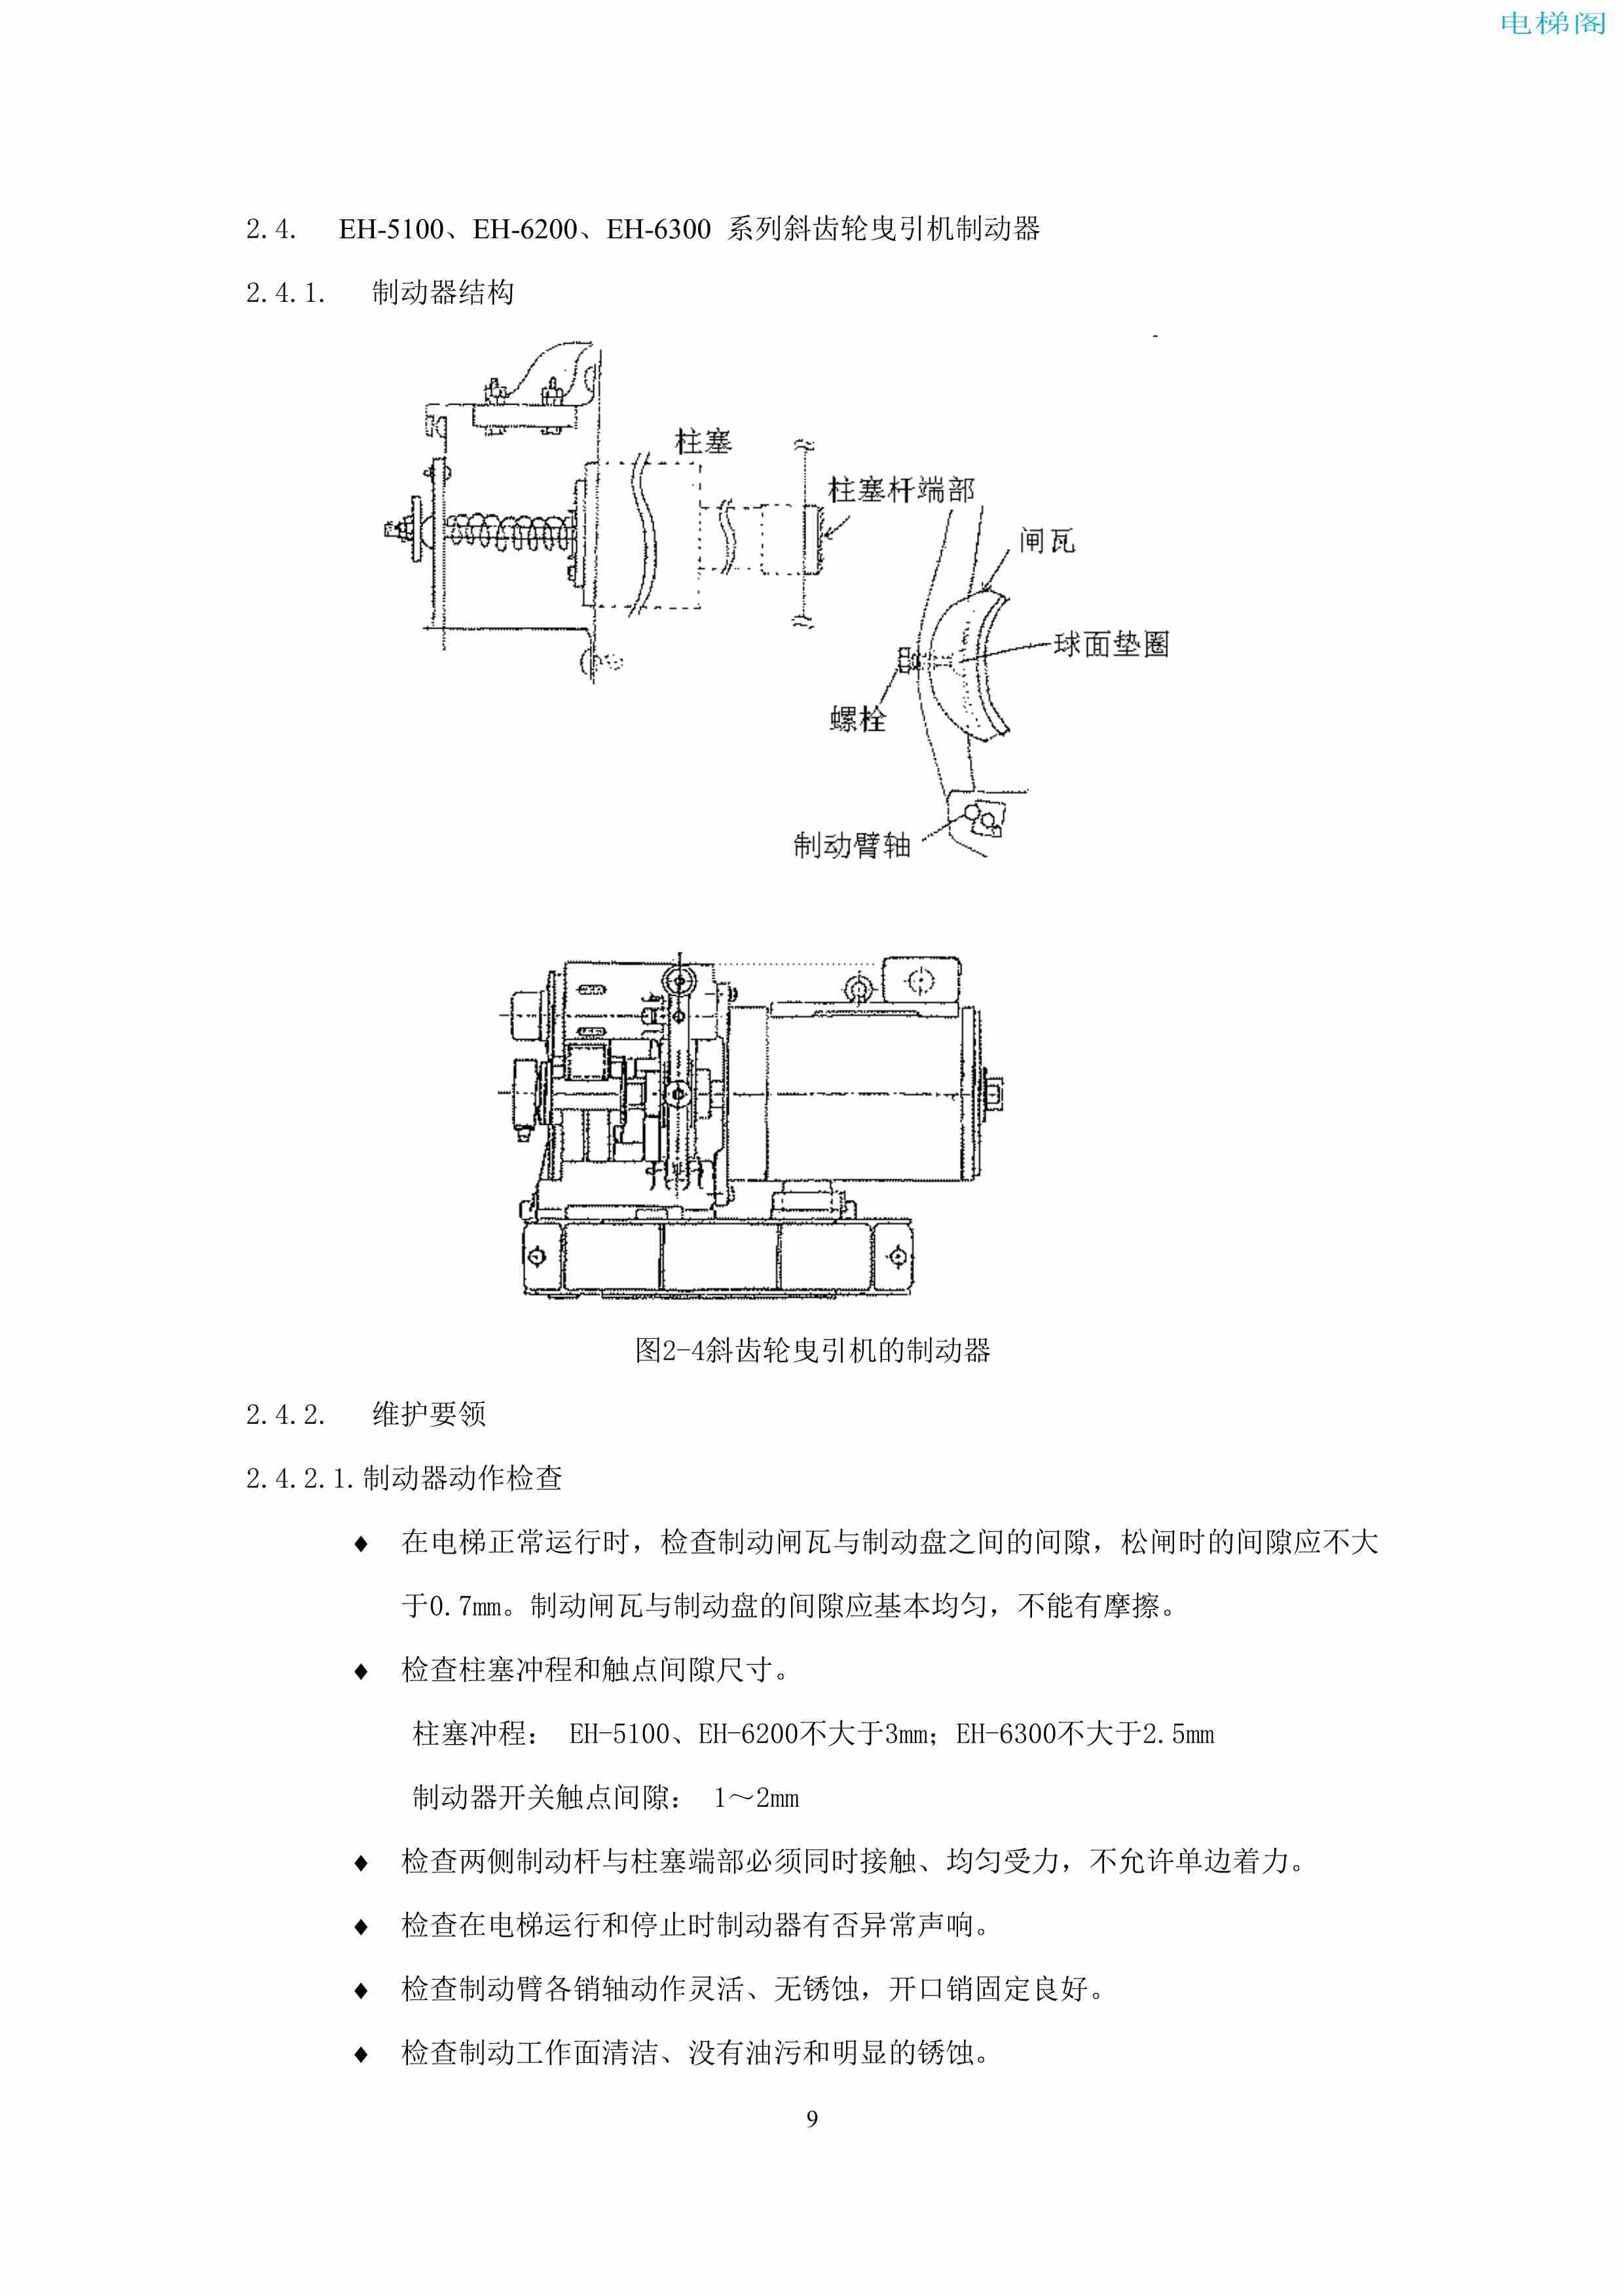 上海三菱电梯有限公司电梯制动器维护作业要领汇编_11.jpg